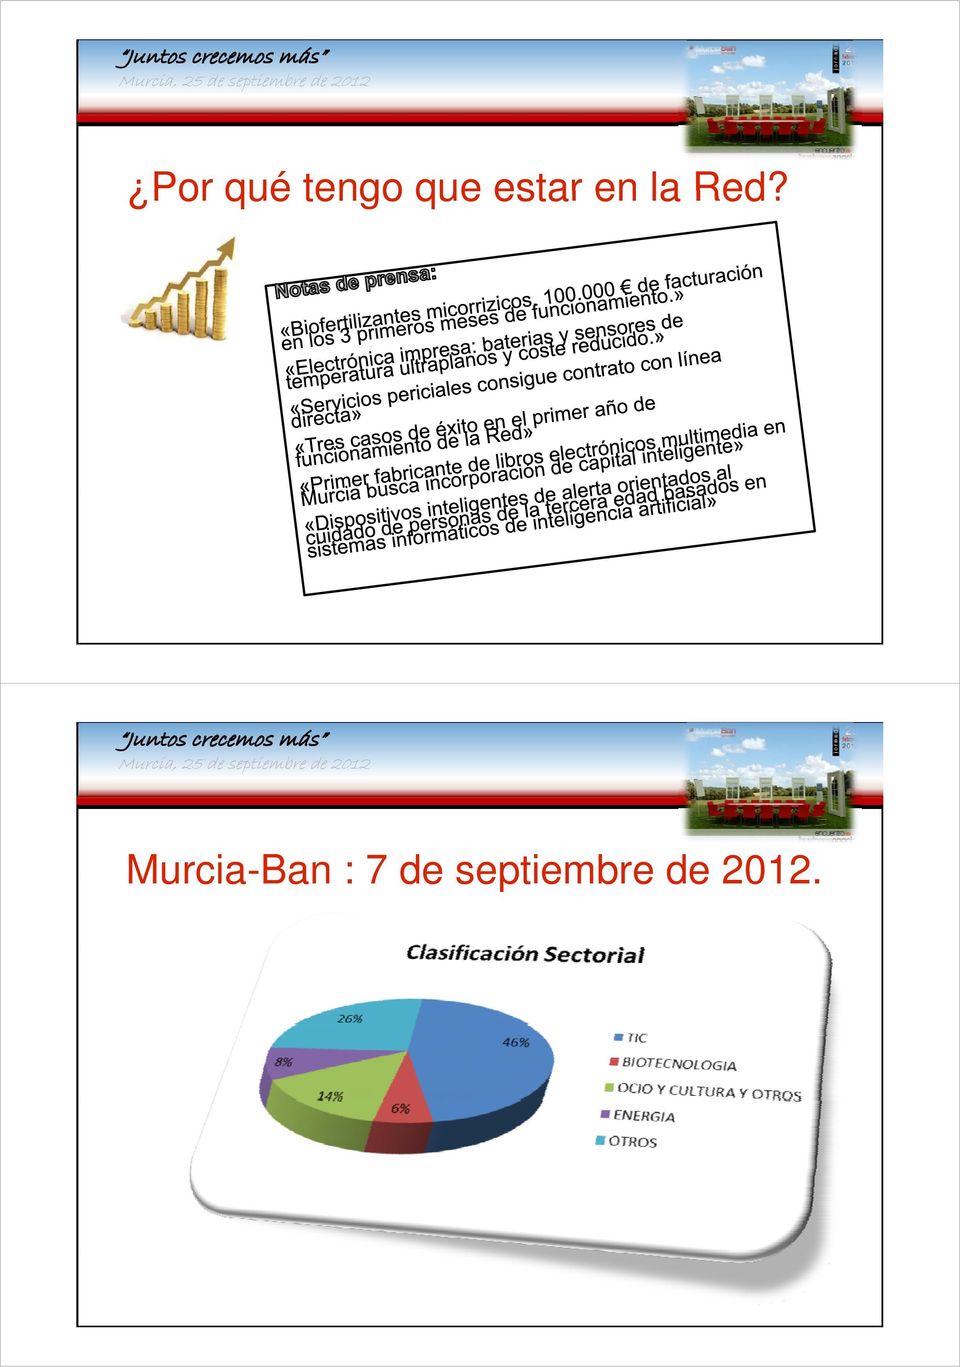 Murcia-Ban : 7 de